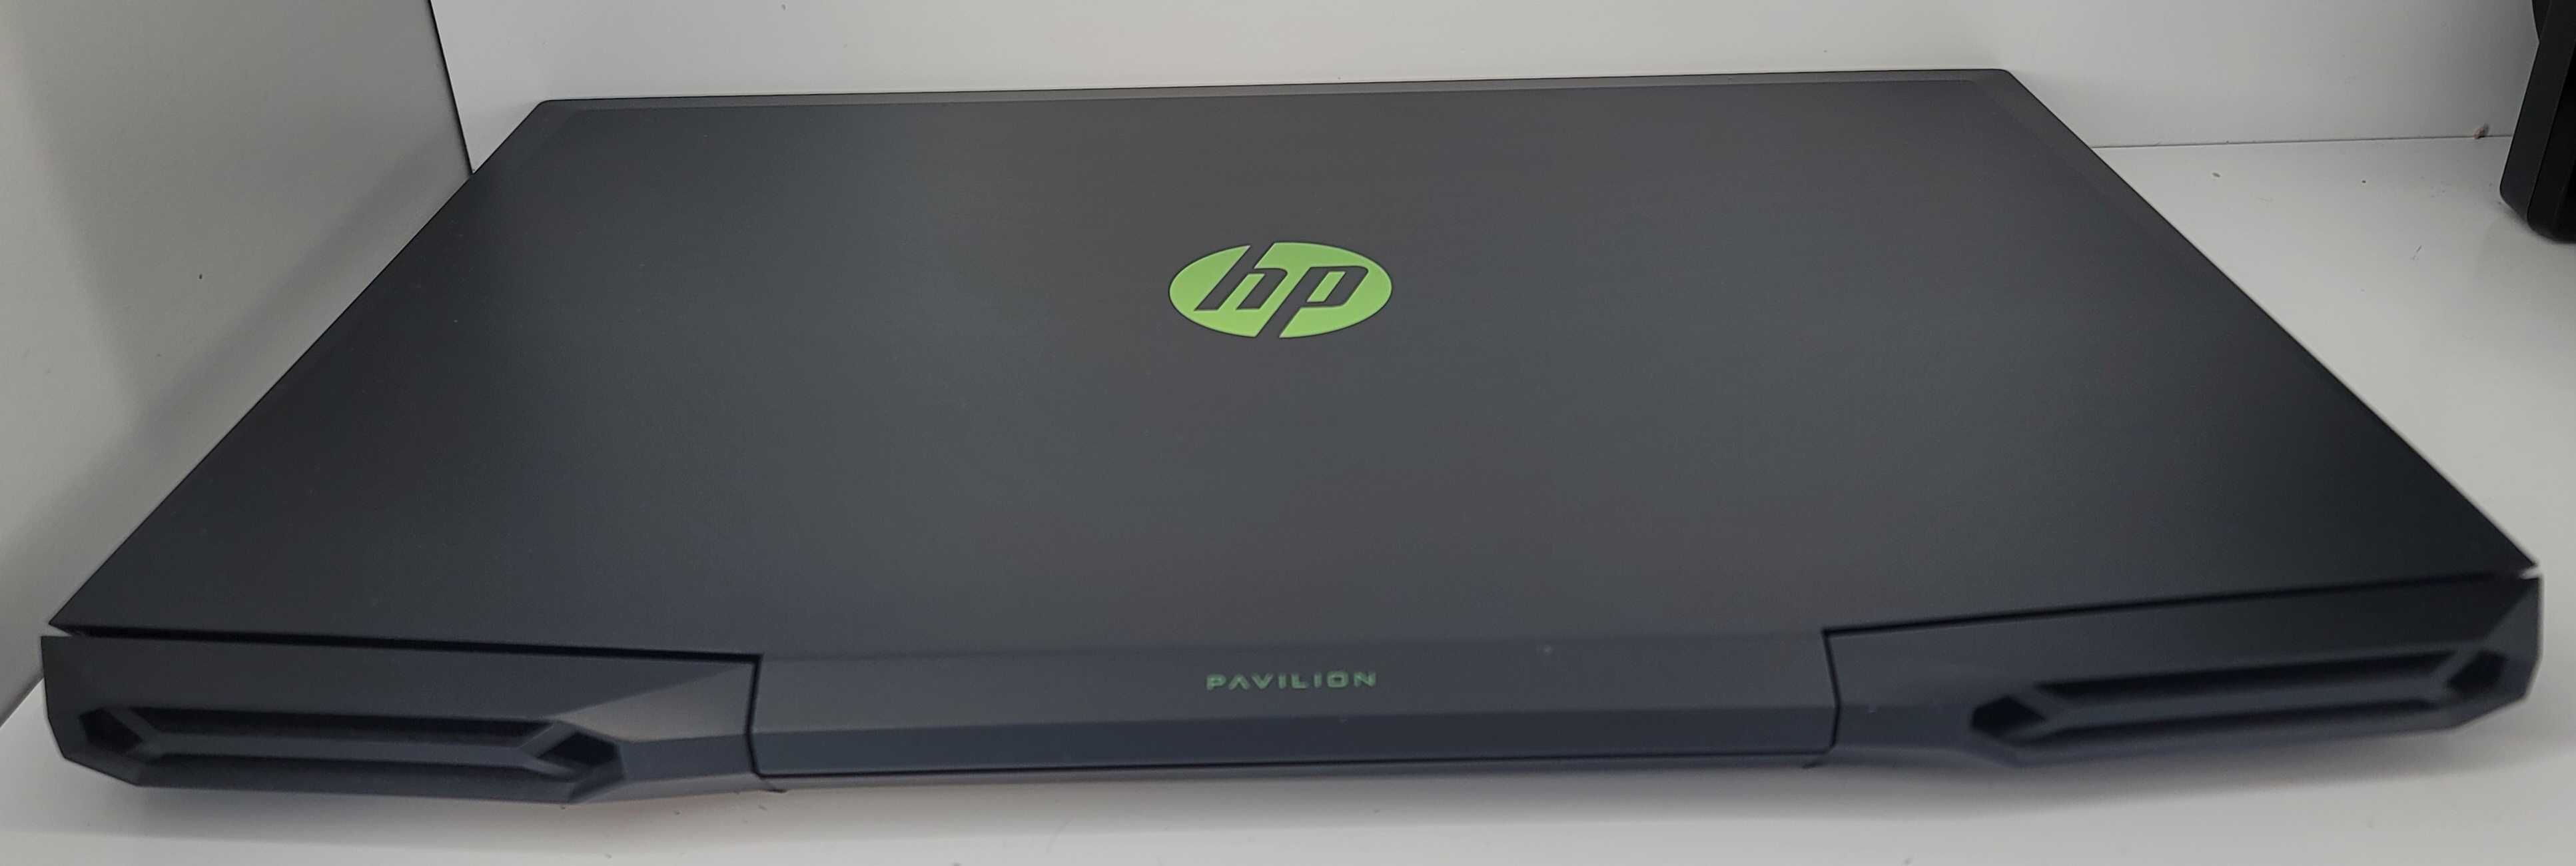 Laptop Gamingowy HP Pavilion 17-cd2510nw Zasilacz Pudełko Gwarancja